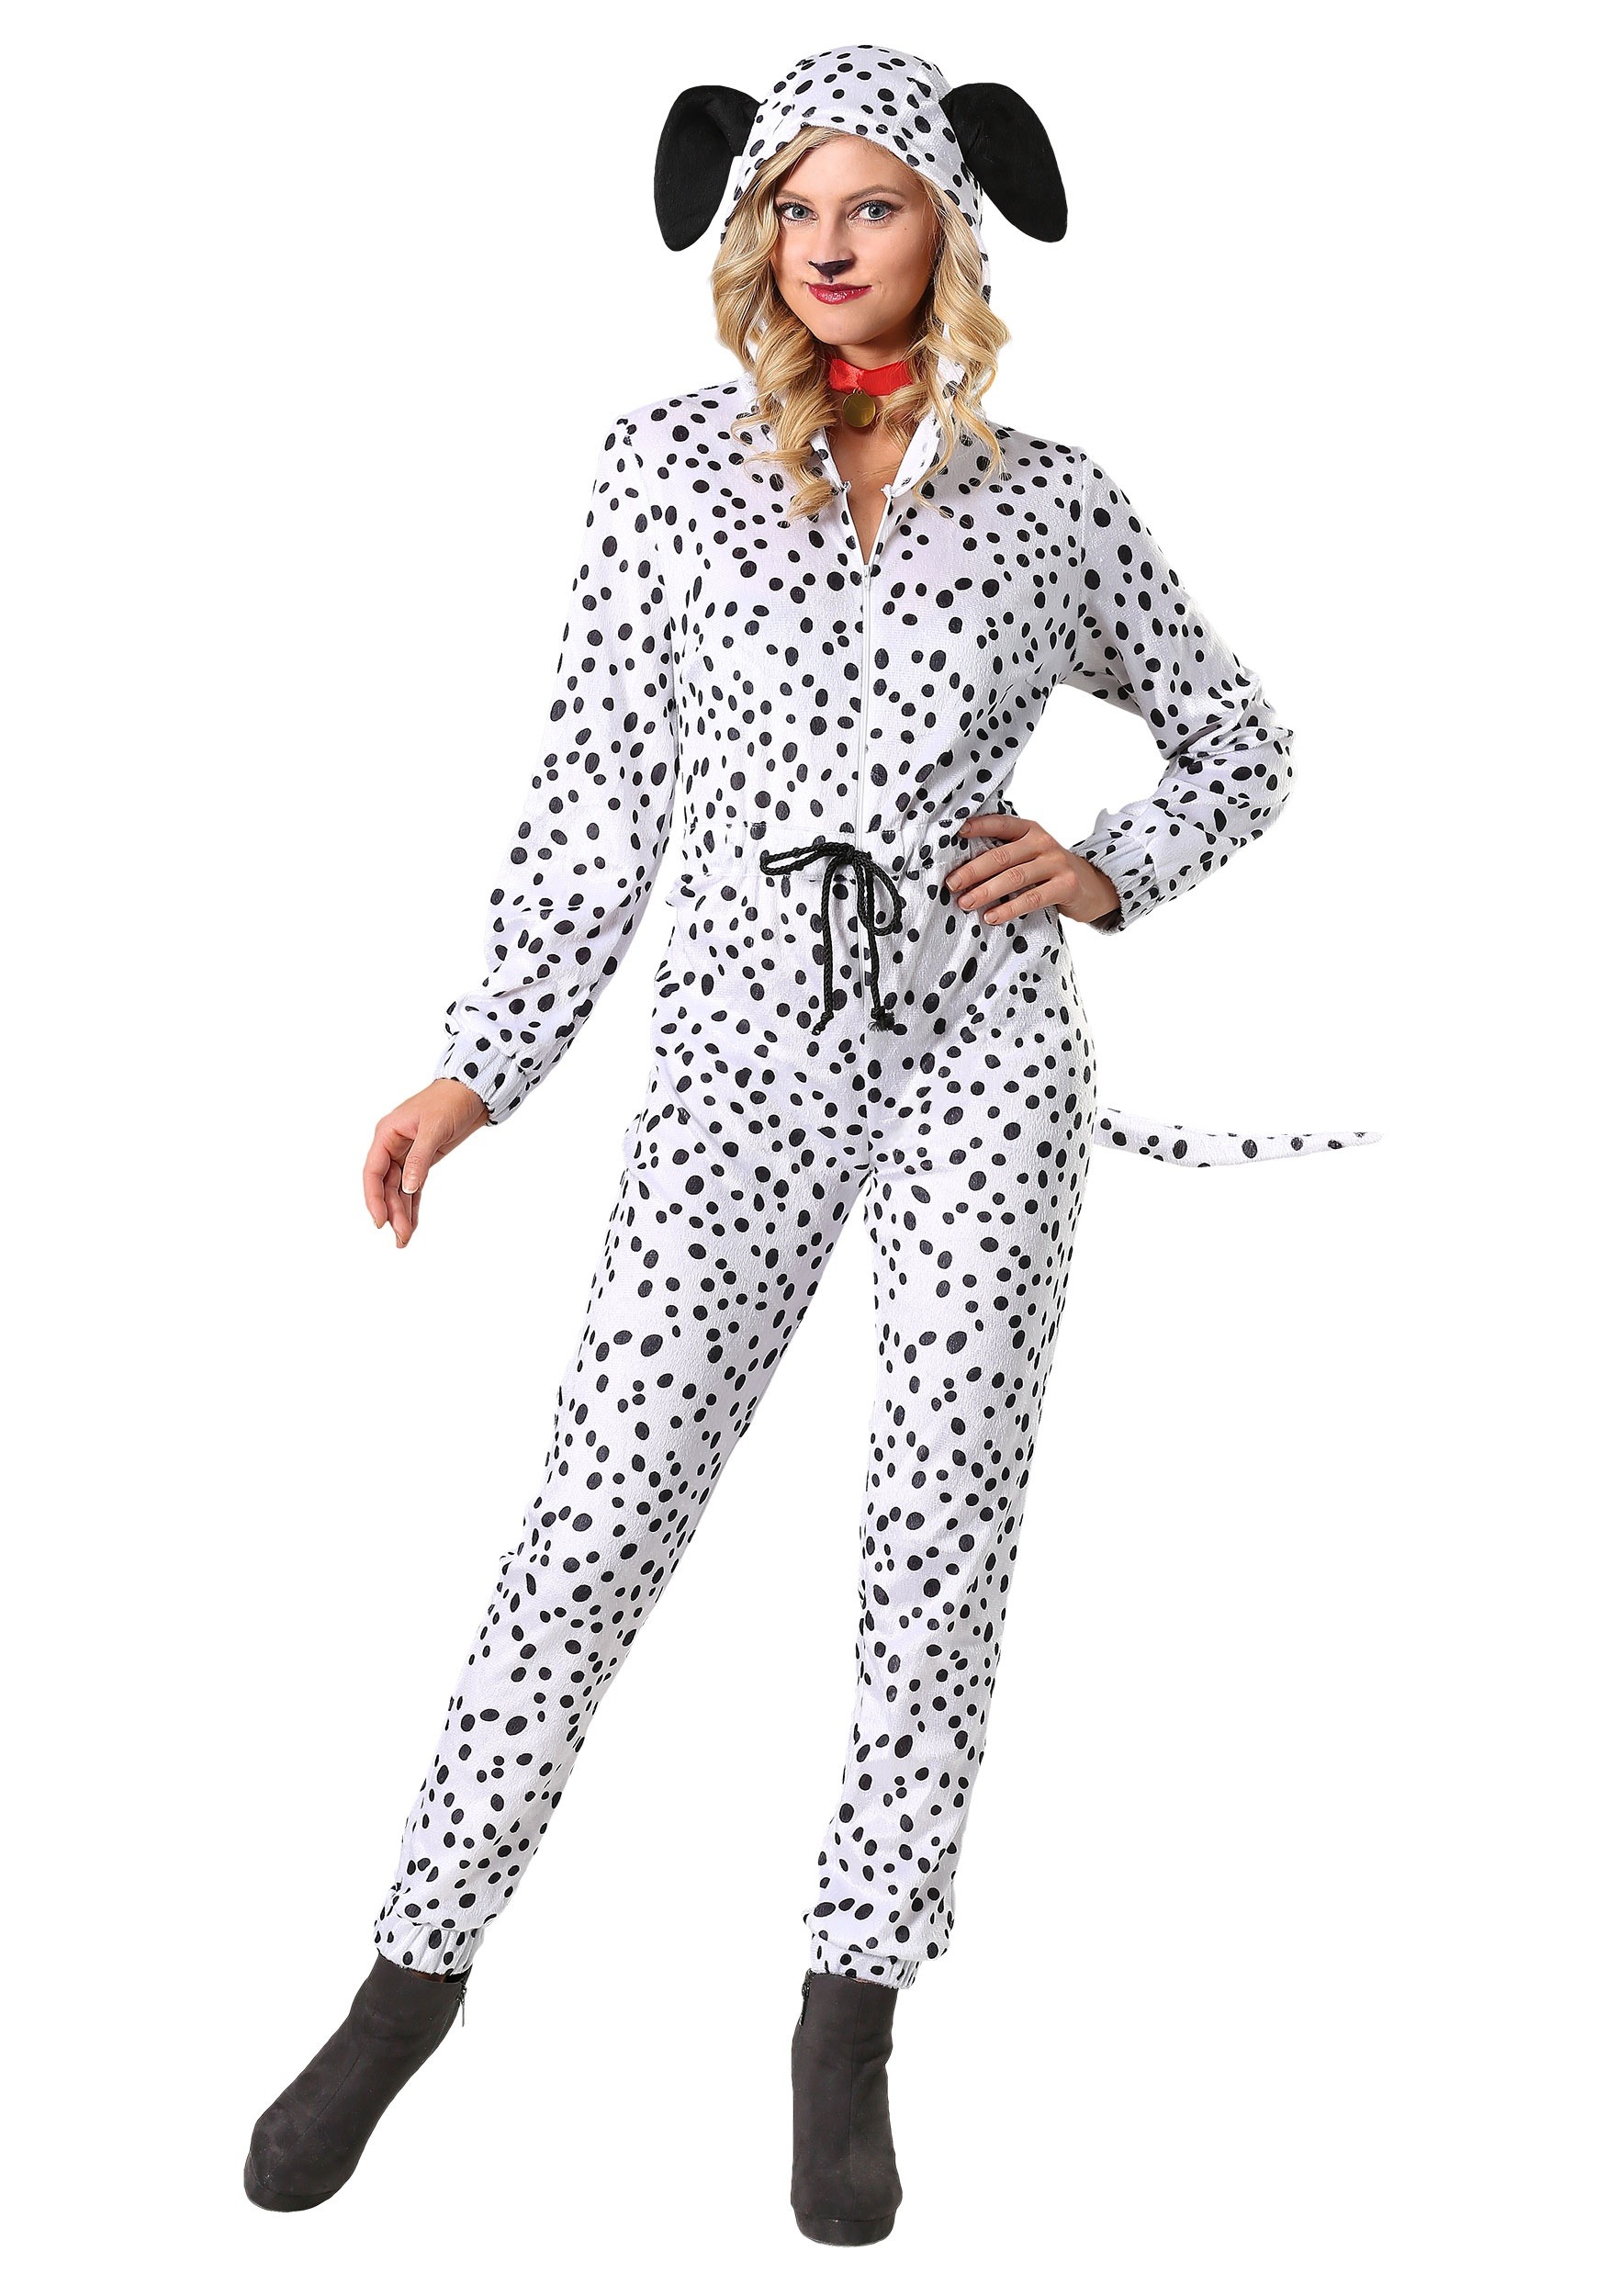 Photos - Fancy Dress Cozy FUN Costumes Plus Size  Dalmatian Jumpsuit Costume for Women Black/ 